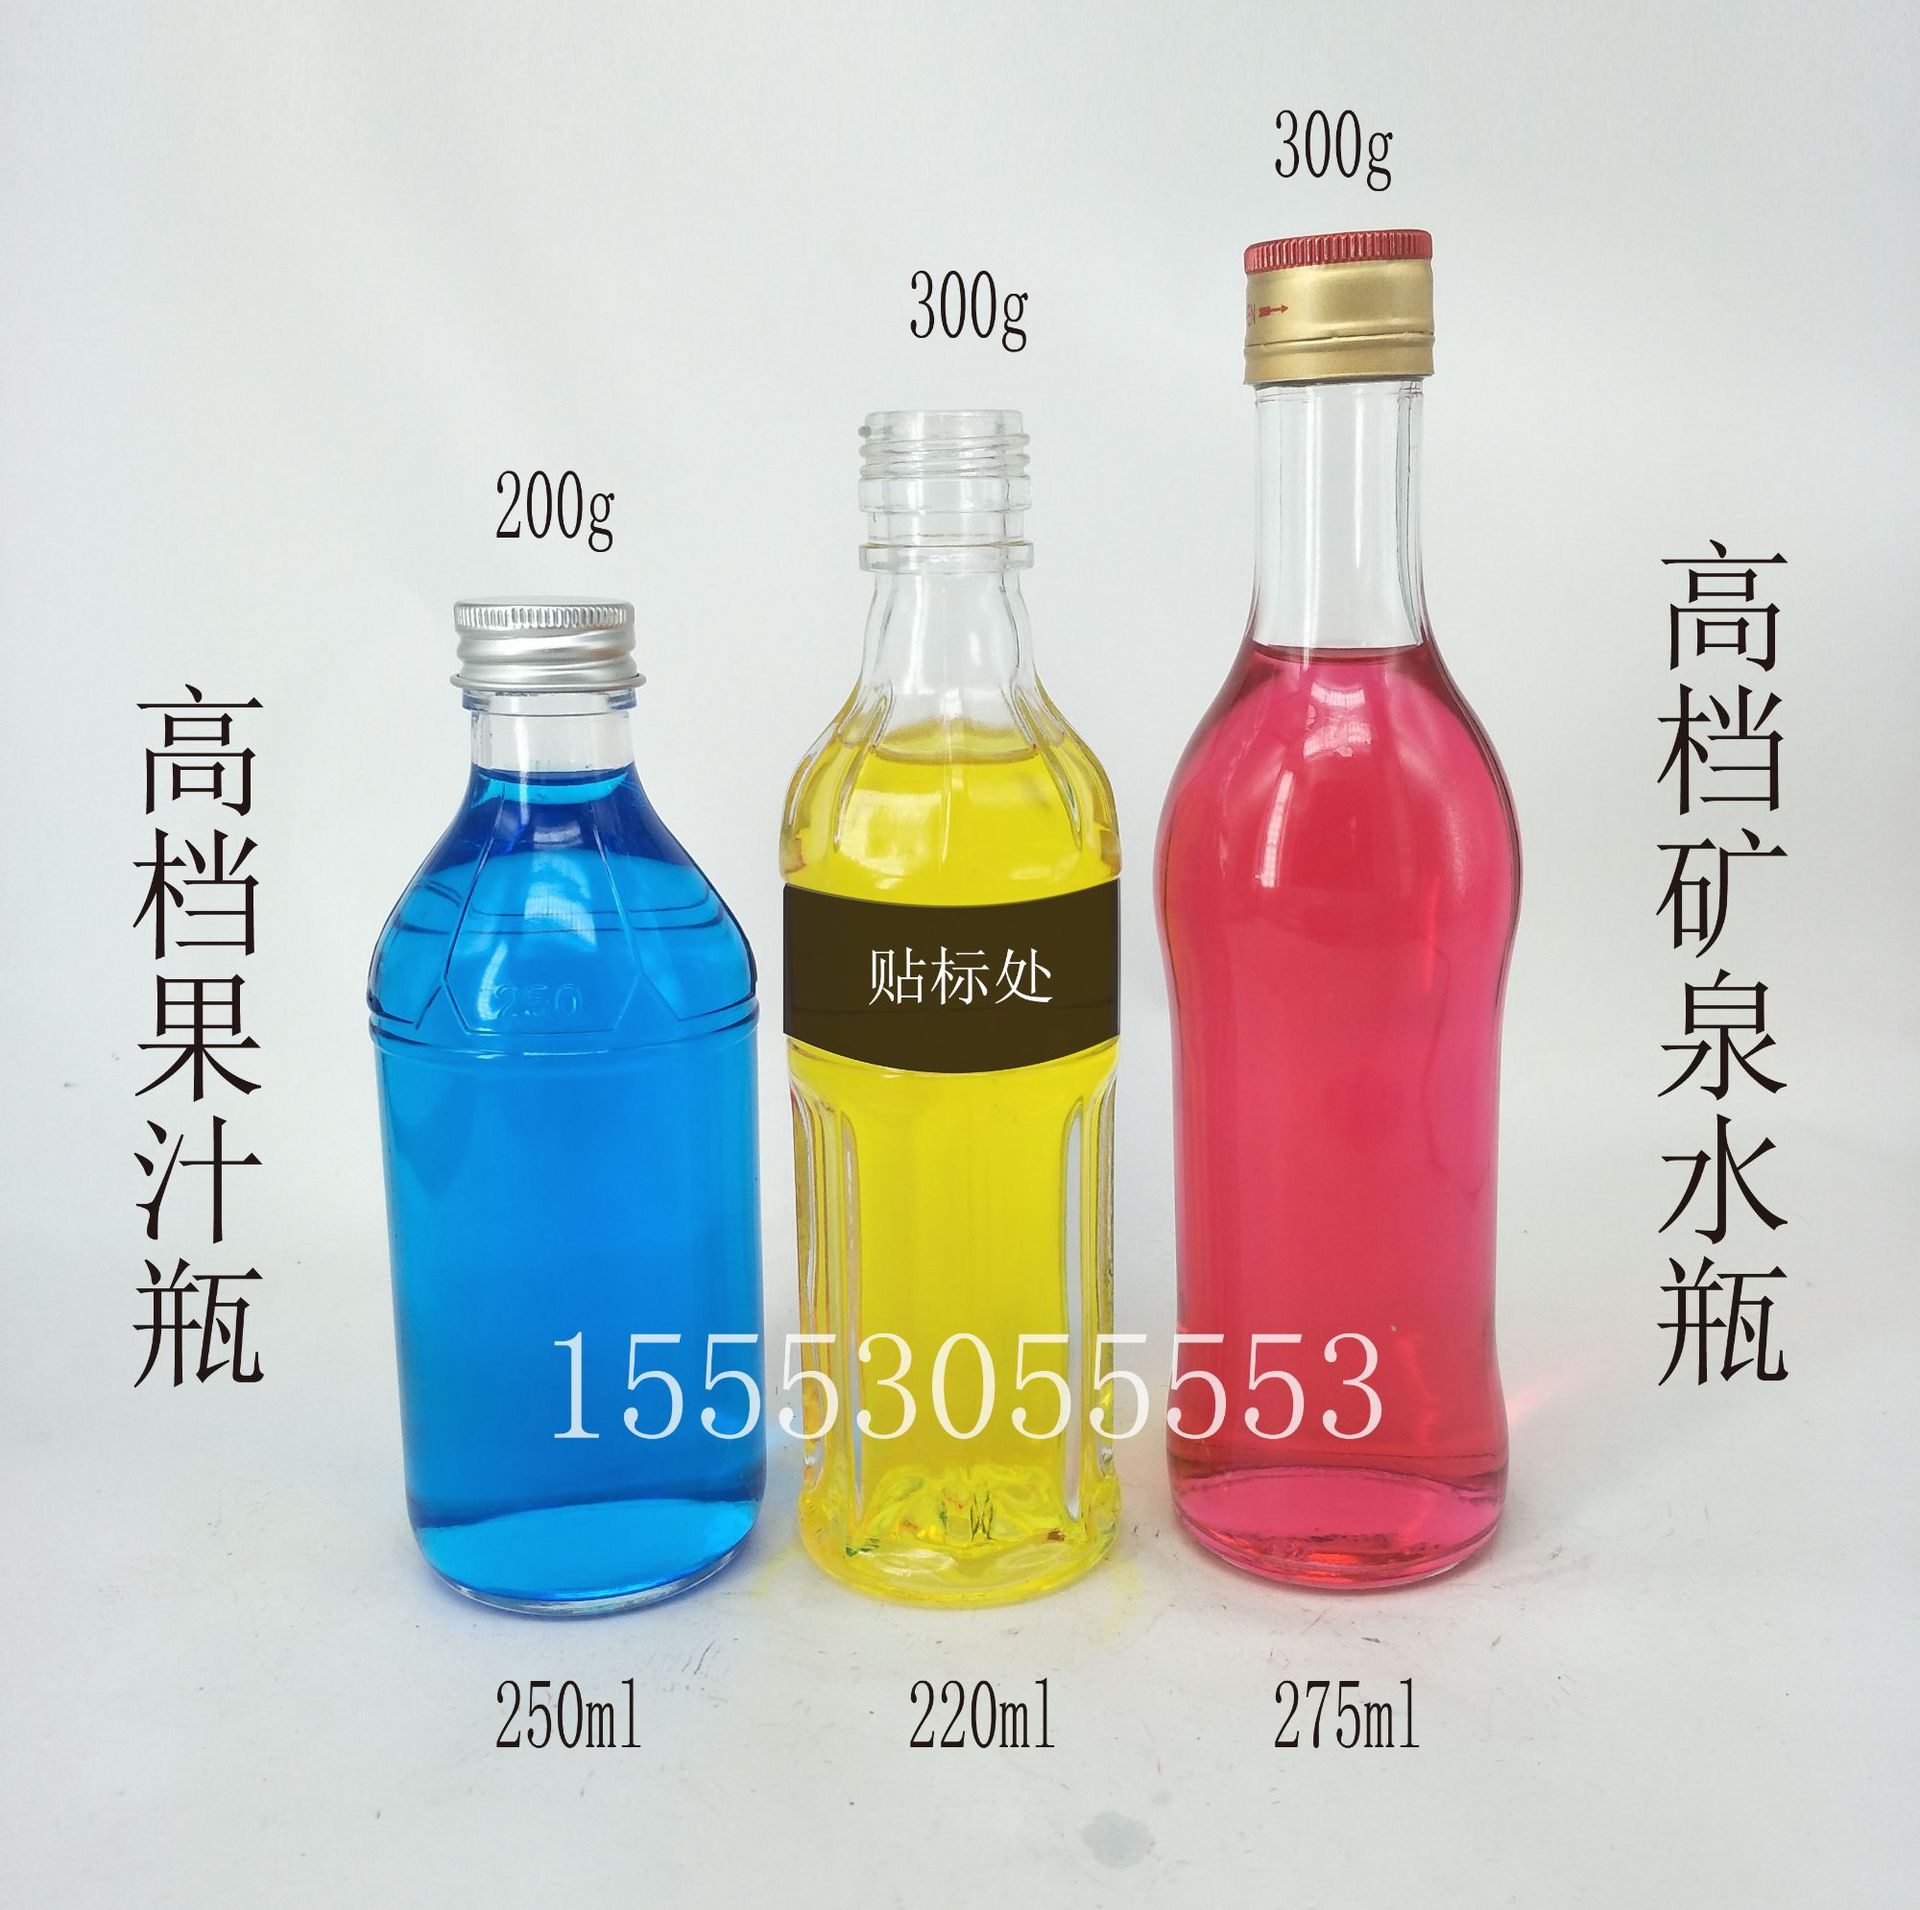 高档晶白料 275ml 依云矿泉水玻璃瓶   饮料  果汁玻璃瓶 250ml示例图3